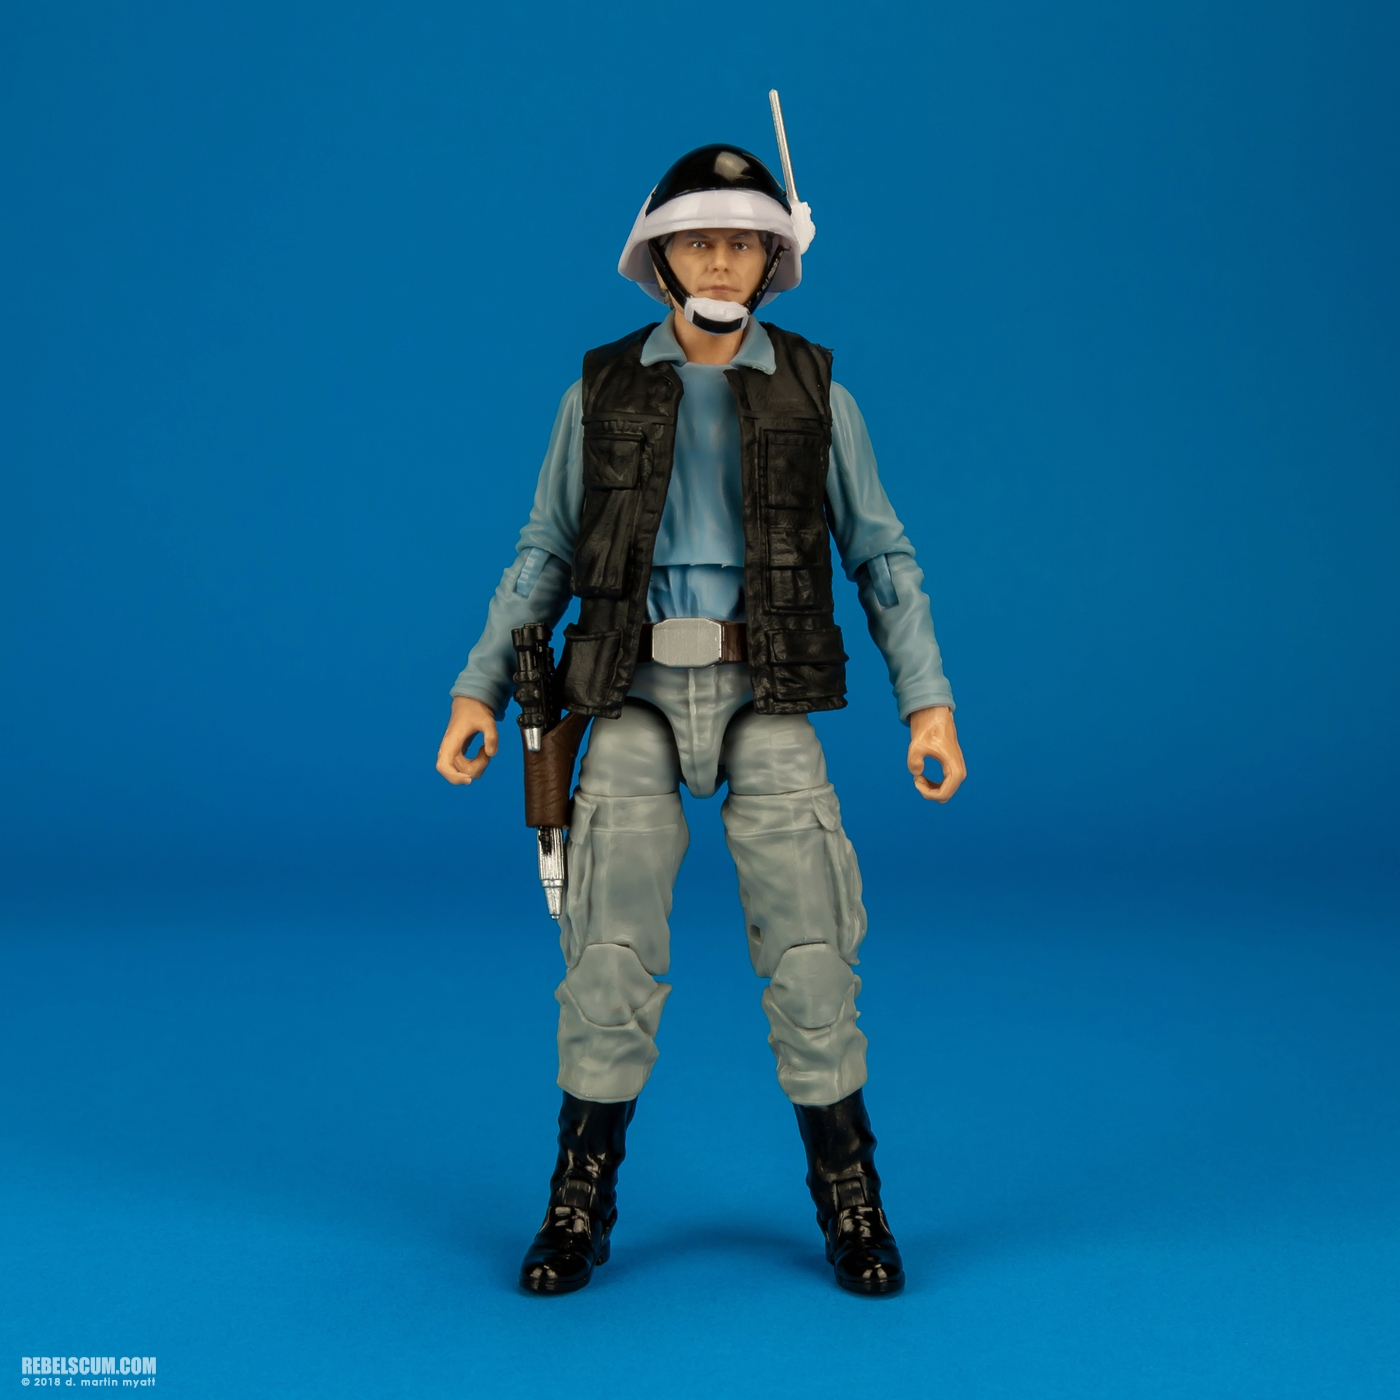 Rebel_Trooper-69-Star-Wars-The-Black-Series-6-inch-Hasbro-001.jpg